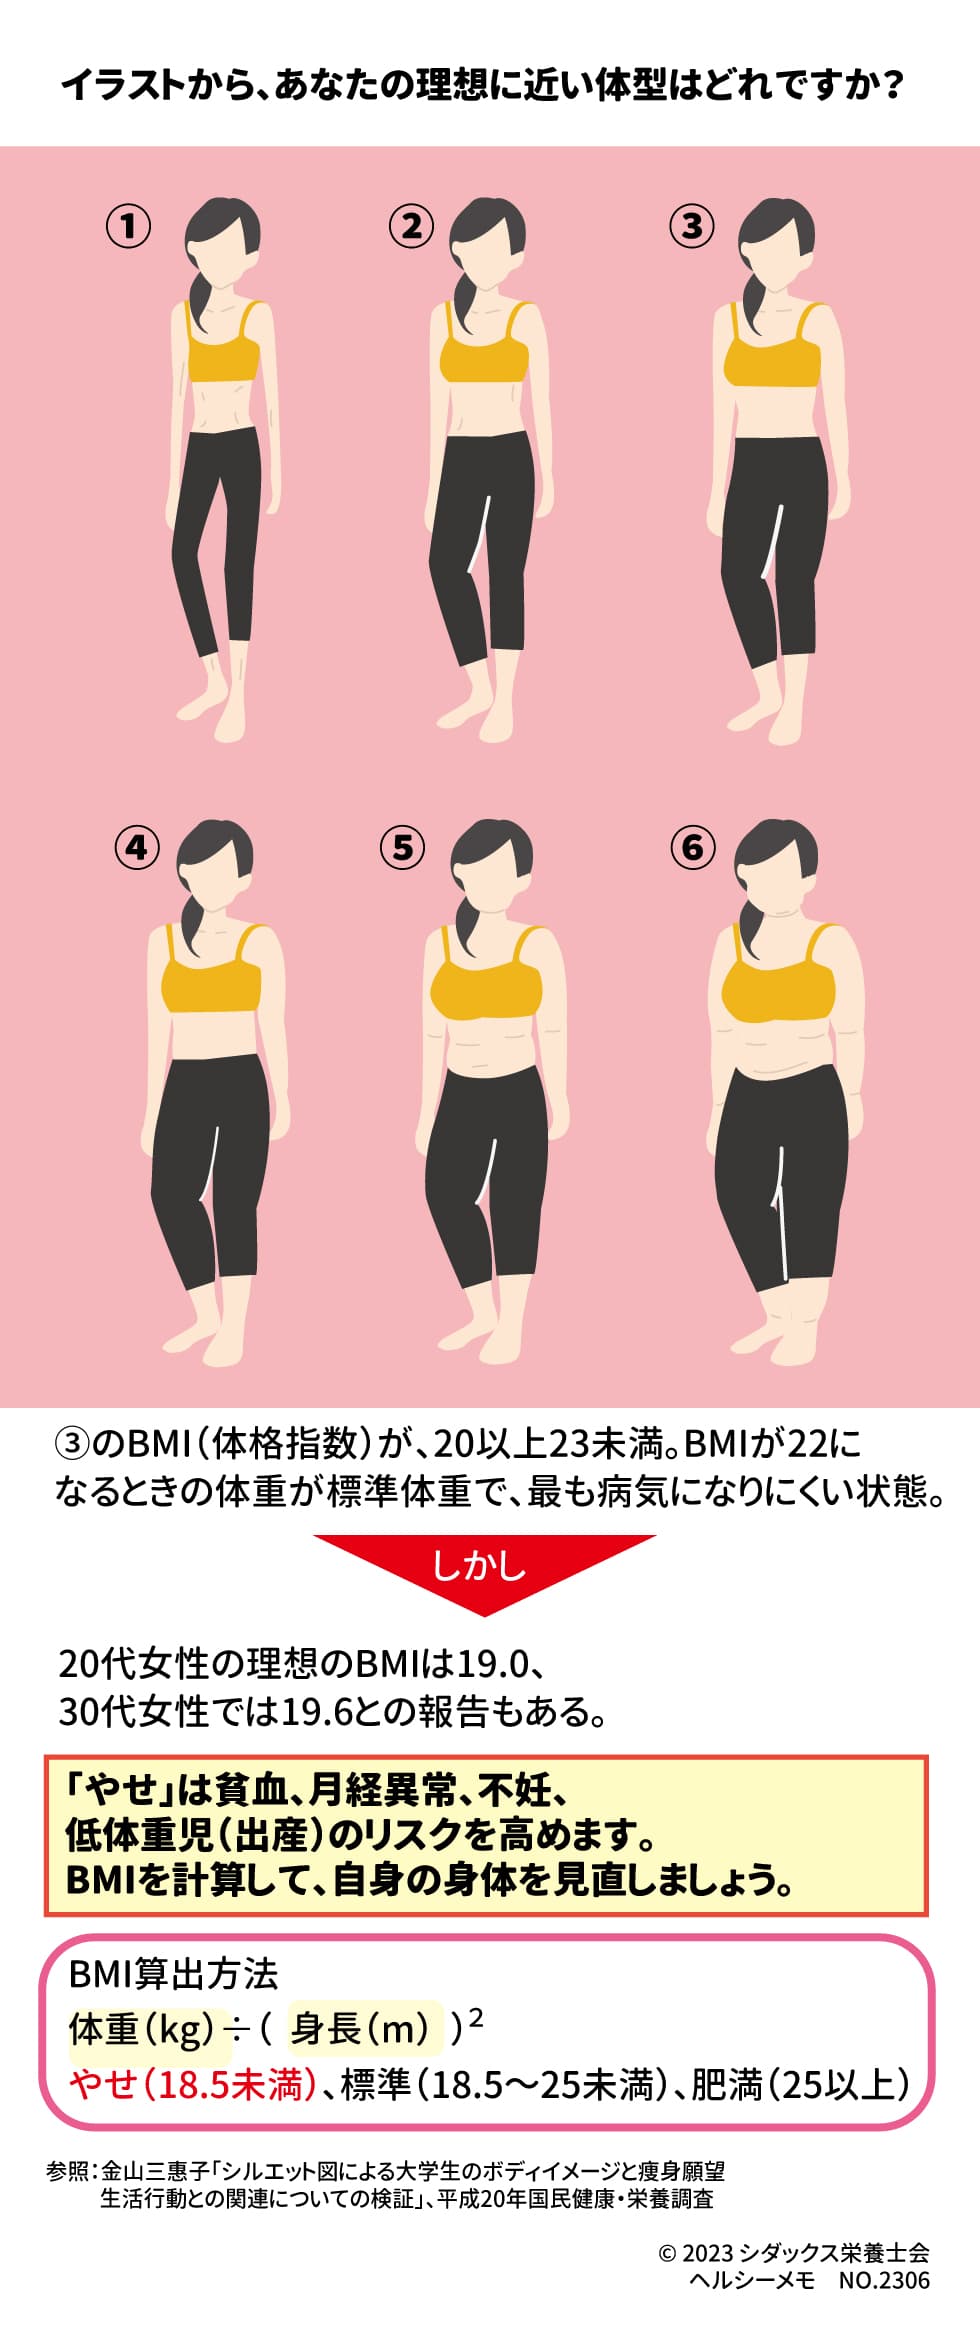 あなたの思う理想の体型と健康 イラストから、あなたの理想に近い体型はどれですか？ ③のBMI（体格指数）が、20以上23未満。BMIが22になるときの体重が標準体重で、最も病気になりにくい状態。 しかし、20代女性の理想のBMIとして19.0、30代女性で19.6との報告もある。 「やせ」は貧血、月経異常、不妊、低体重児（出産）のリスクを高めます。BMIを計算して、自身の身体を見直しましょう。 ※BMI算出方法 体重（kg）÷（身長(ｍ)）２ やせ（18.5未満）、標準（18.5～25未満）、肥満（25以上）参照：金山三惠子「シルエット図による大学生のボディイメージと痩身願望， 生活行動との関連についての検証」 　　　平成20年国民健康・栄養調査